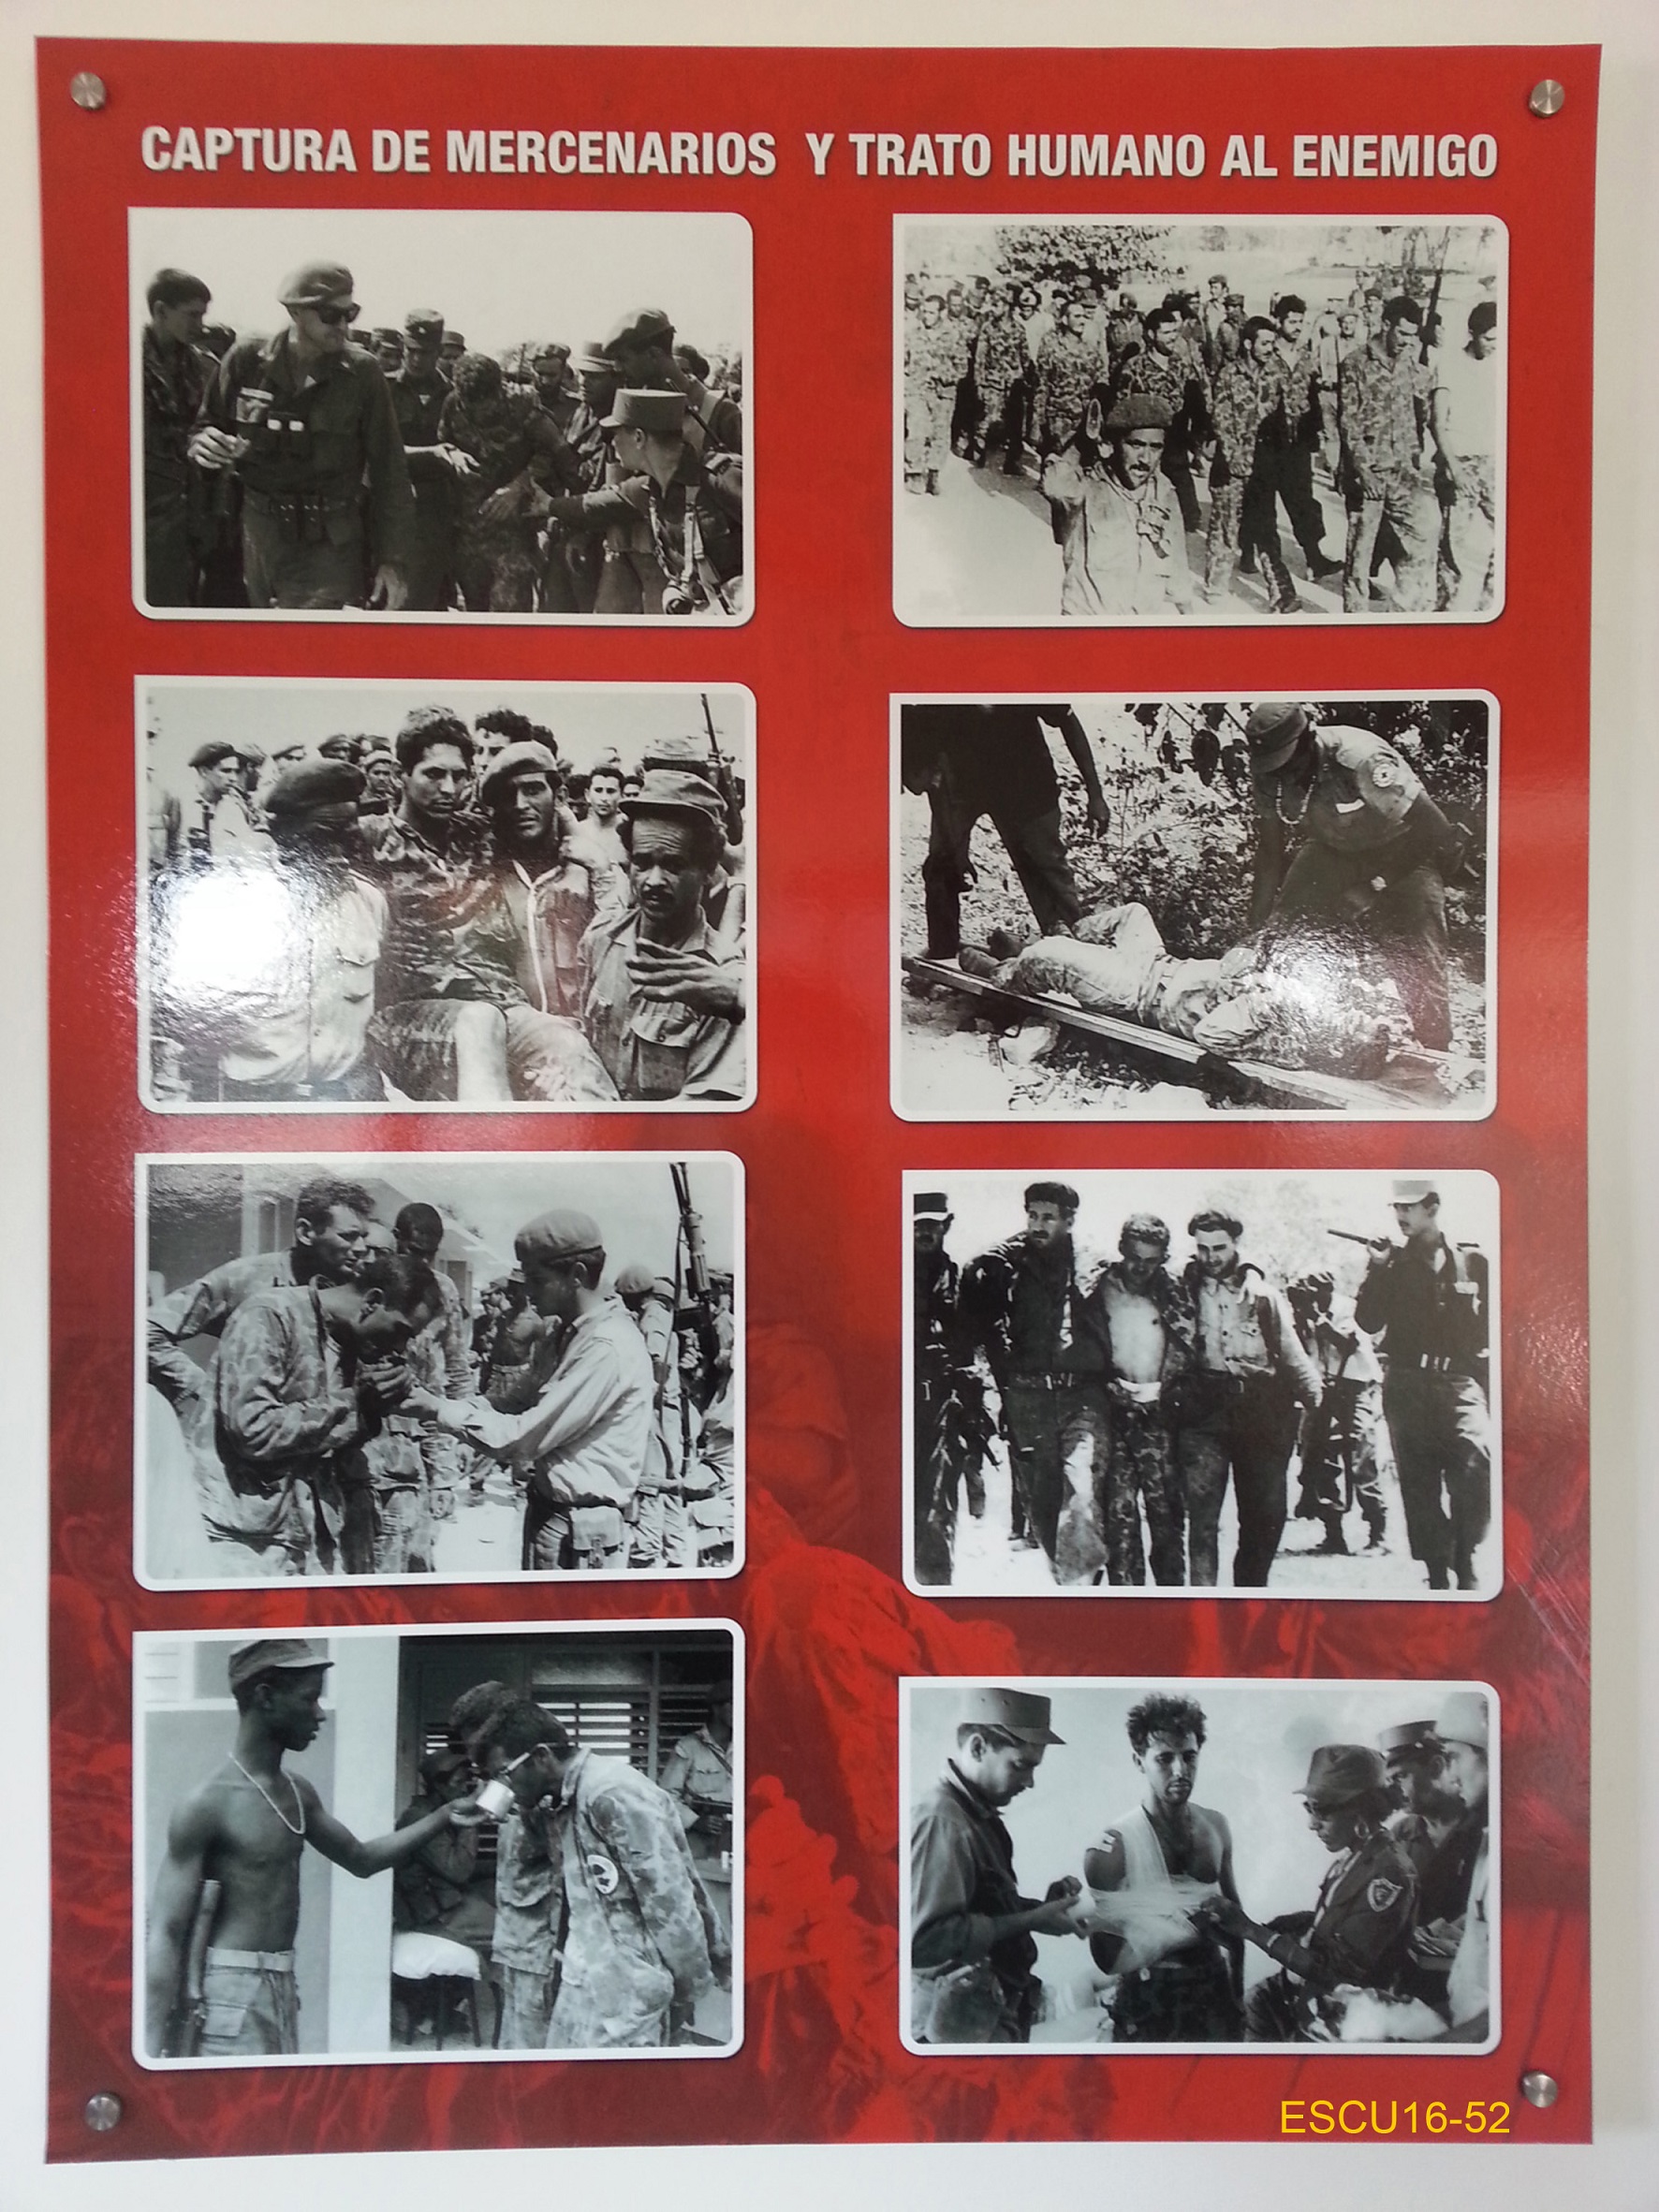 Pannelli con immagini che illustrano le ultime fasi della battaglia, la cattura dei mercenarios , le fasi del processo e della liberazione dei prigionieri.